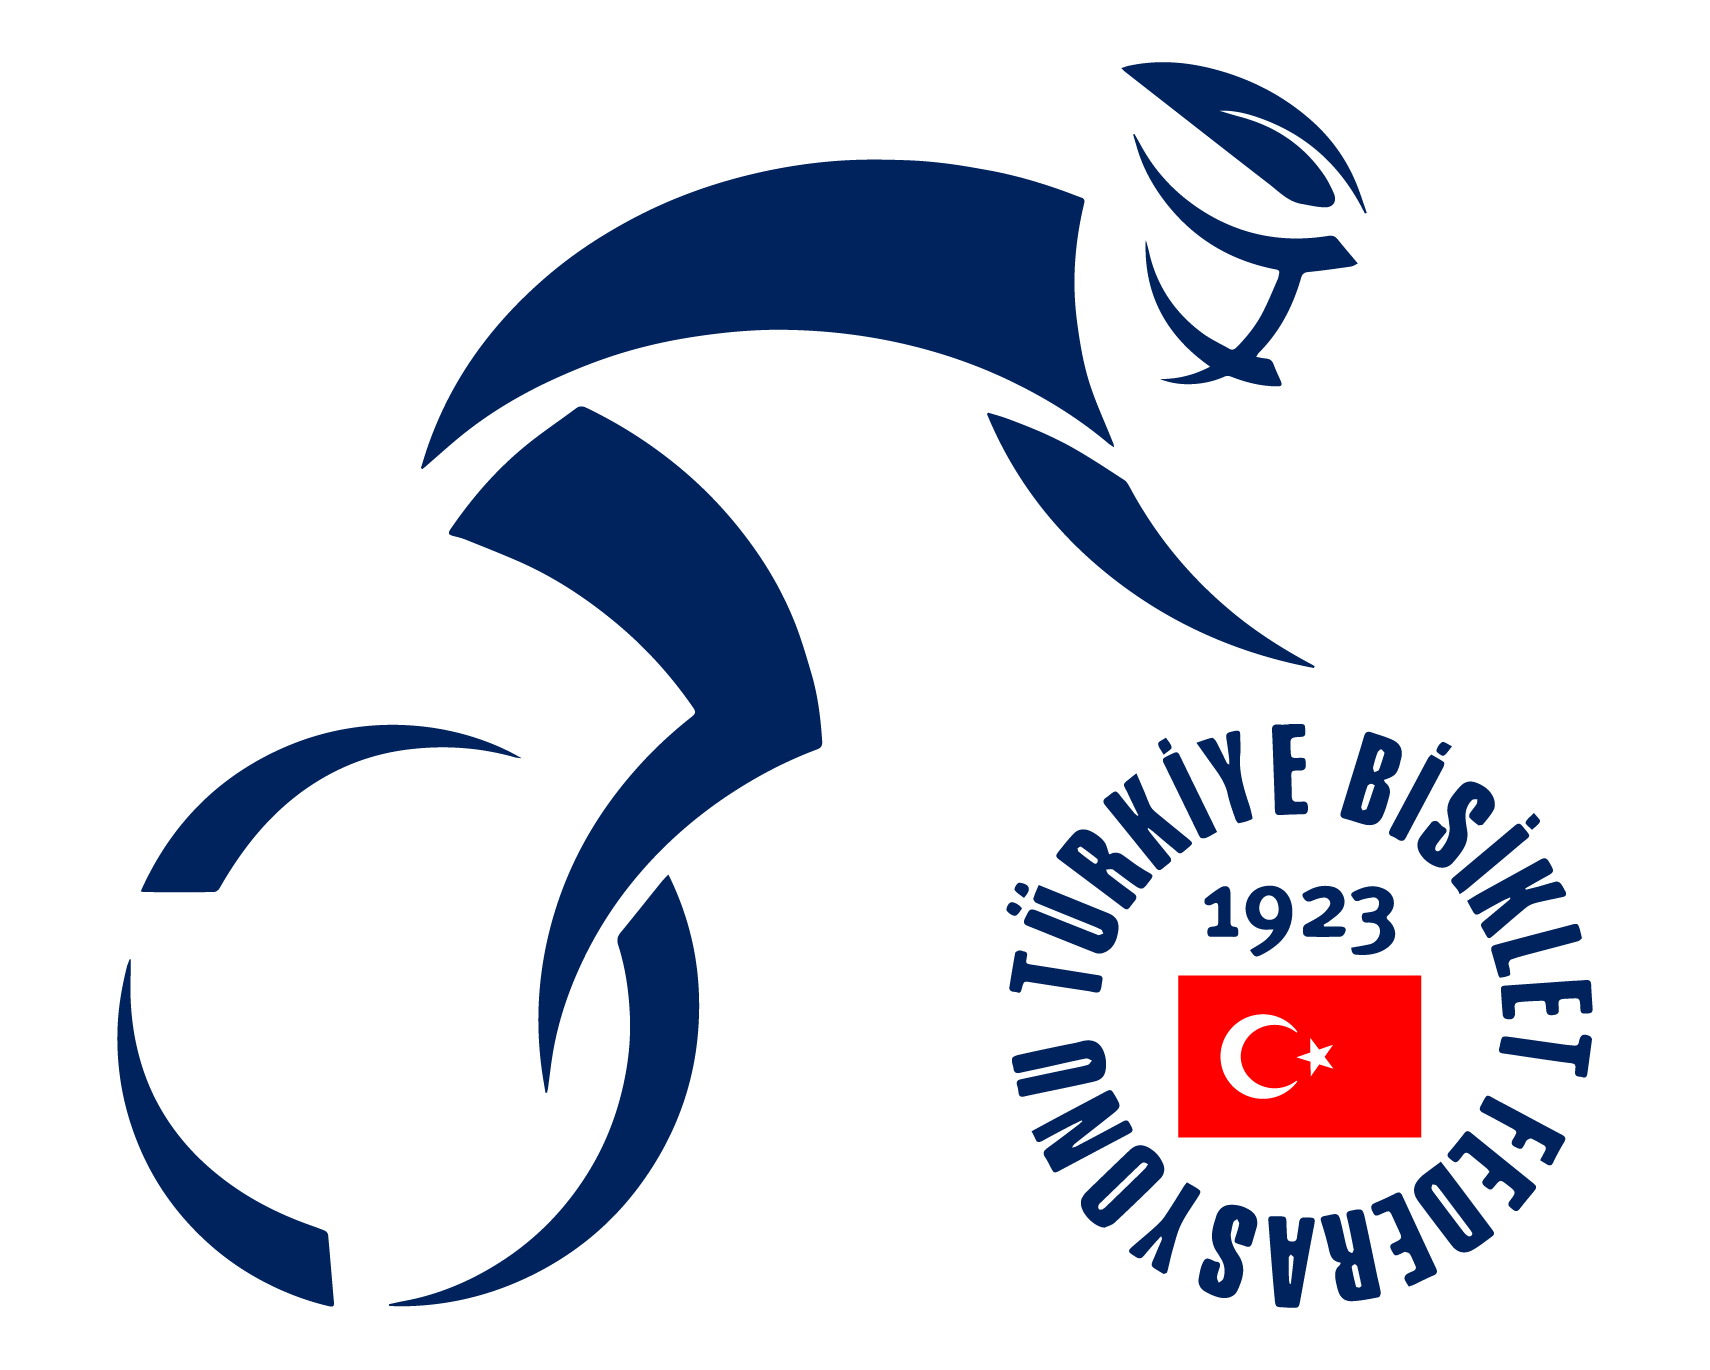 bisiklet federasyonu logo ile ilgili görsel sonucu